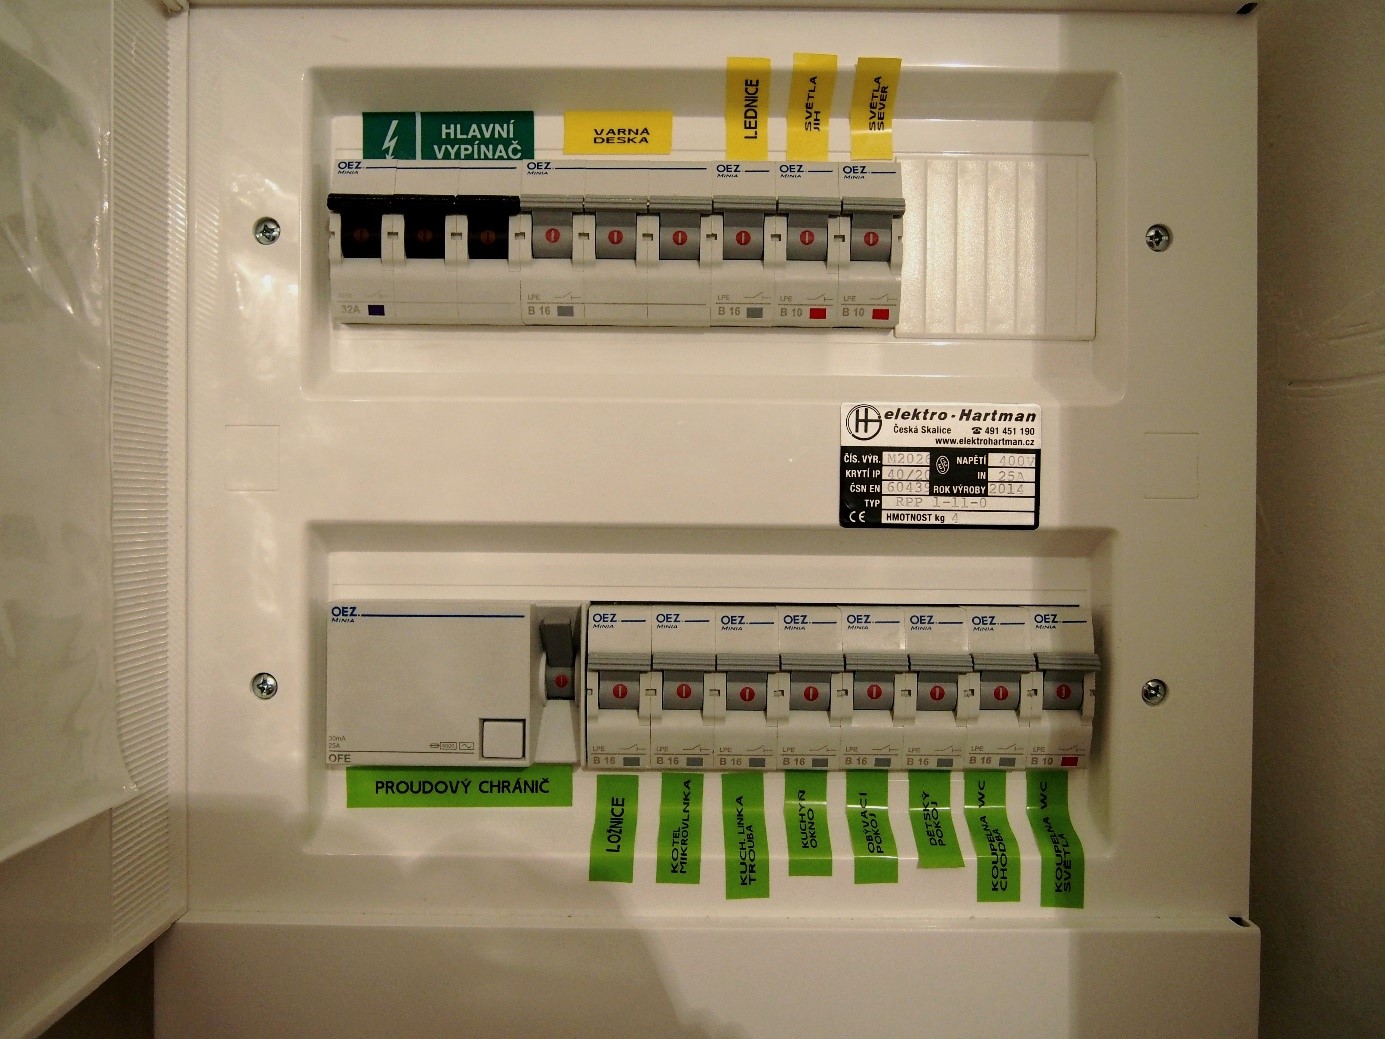 Pohled do bytové rozvodné skříně. 1 řádek zleva: Hlavní vypínač bytový třífázový (3x 32A – musí odpovídat hlavnímu jističi na patře), třífázový jistič pro varnou desku, jistič na zásuvku lednice a dva světelné okruhy. 2. řádek zleva: Proudový chránič, 8 zásuvkových okruhů (pro každou místnost zvlášť – obývací pokoj, 2x ložnice, koupelna zásuvky, koupelna světla, tři okruhy pro kuchyň). Skříň má revizní štítek o tom, že byla odborně sestavena.